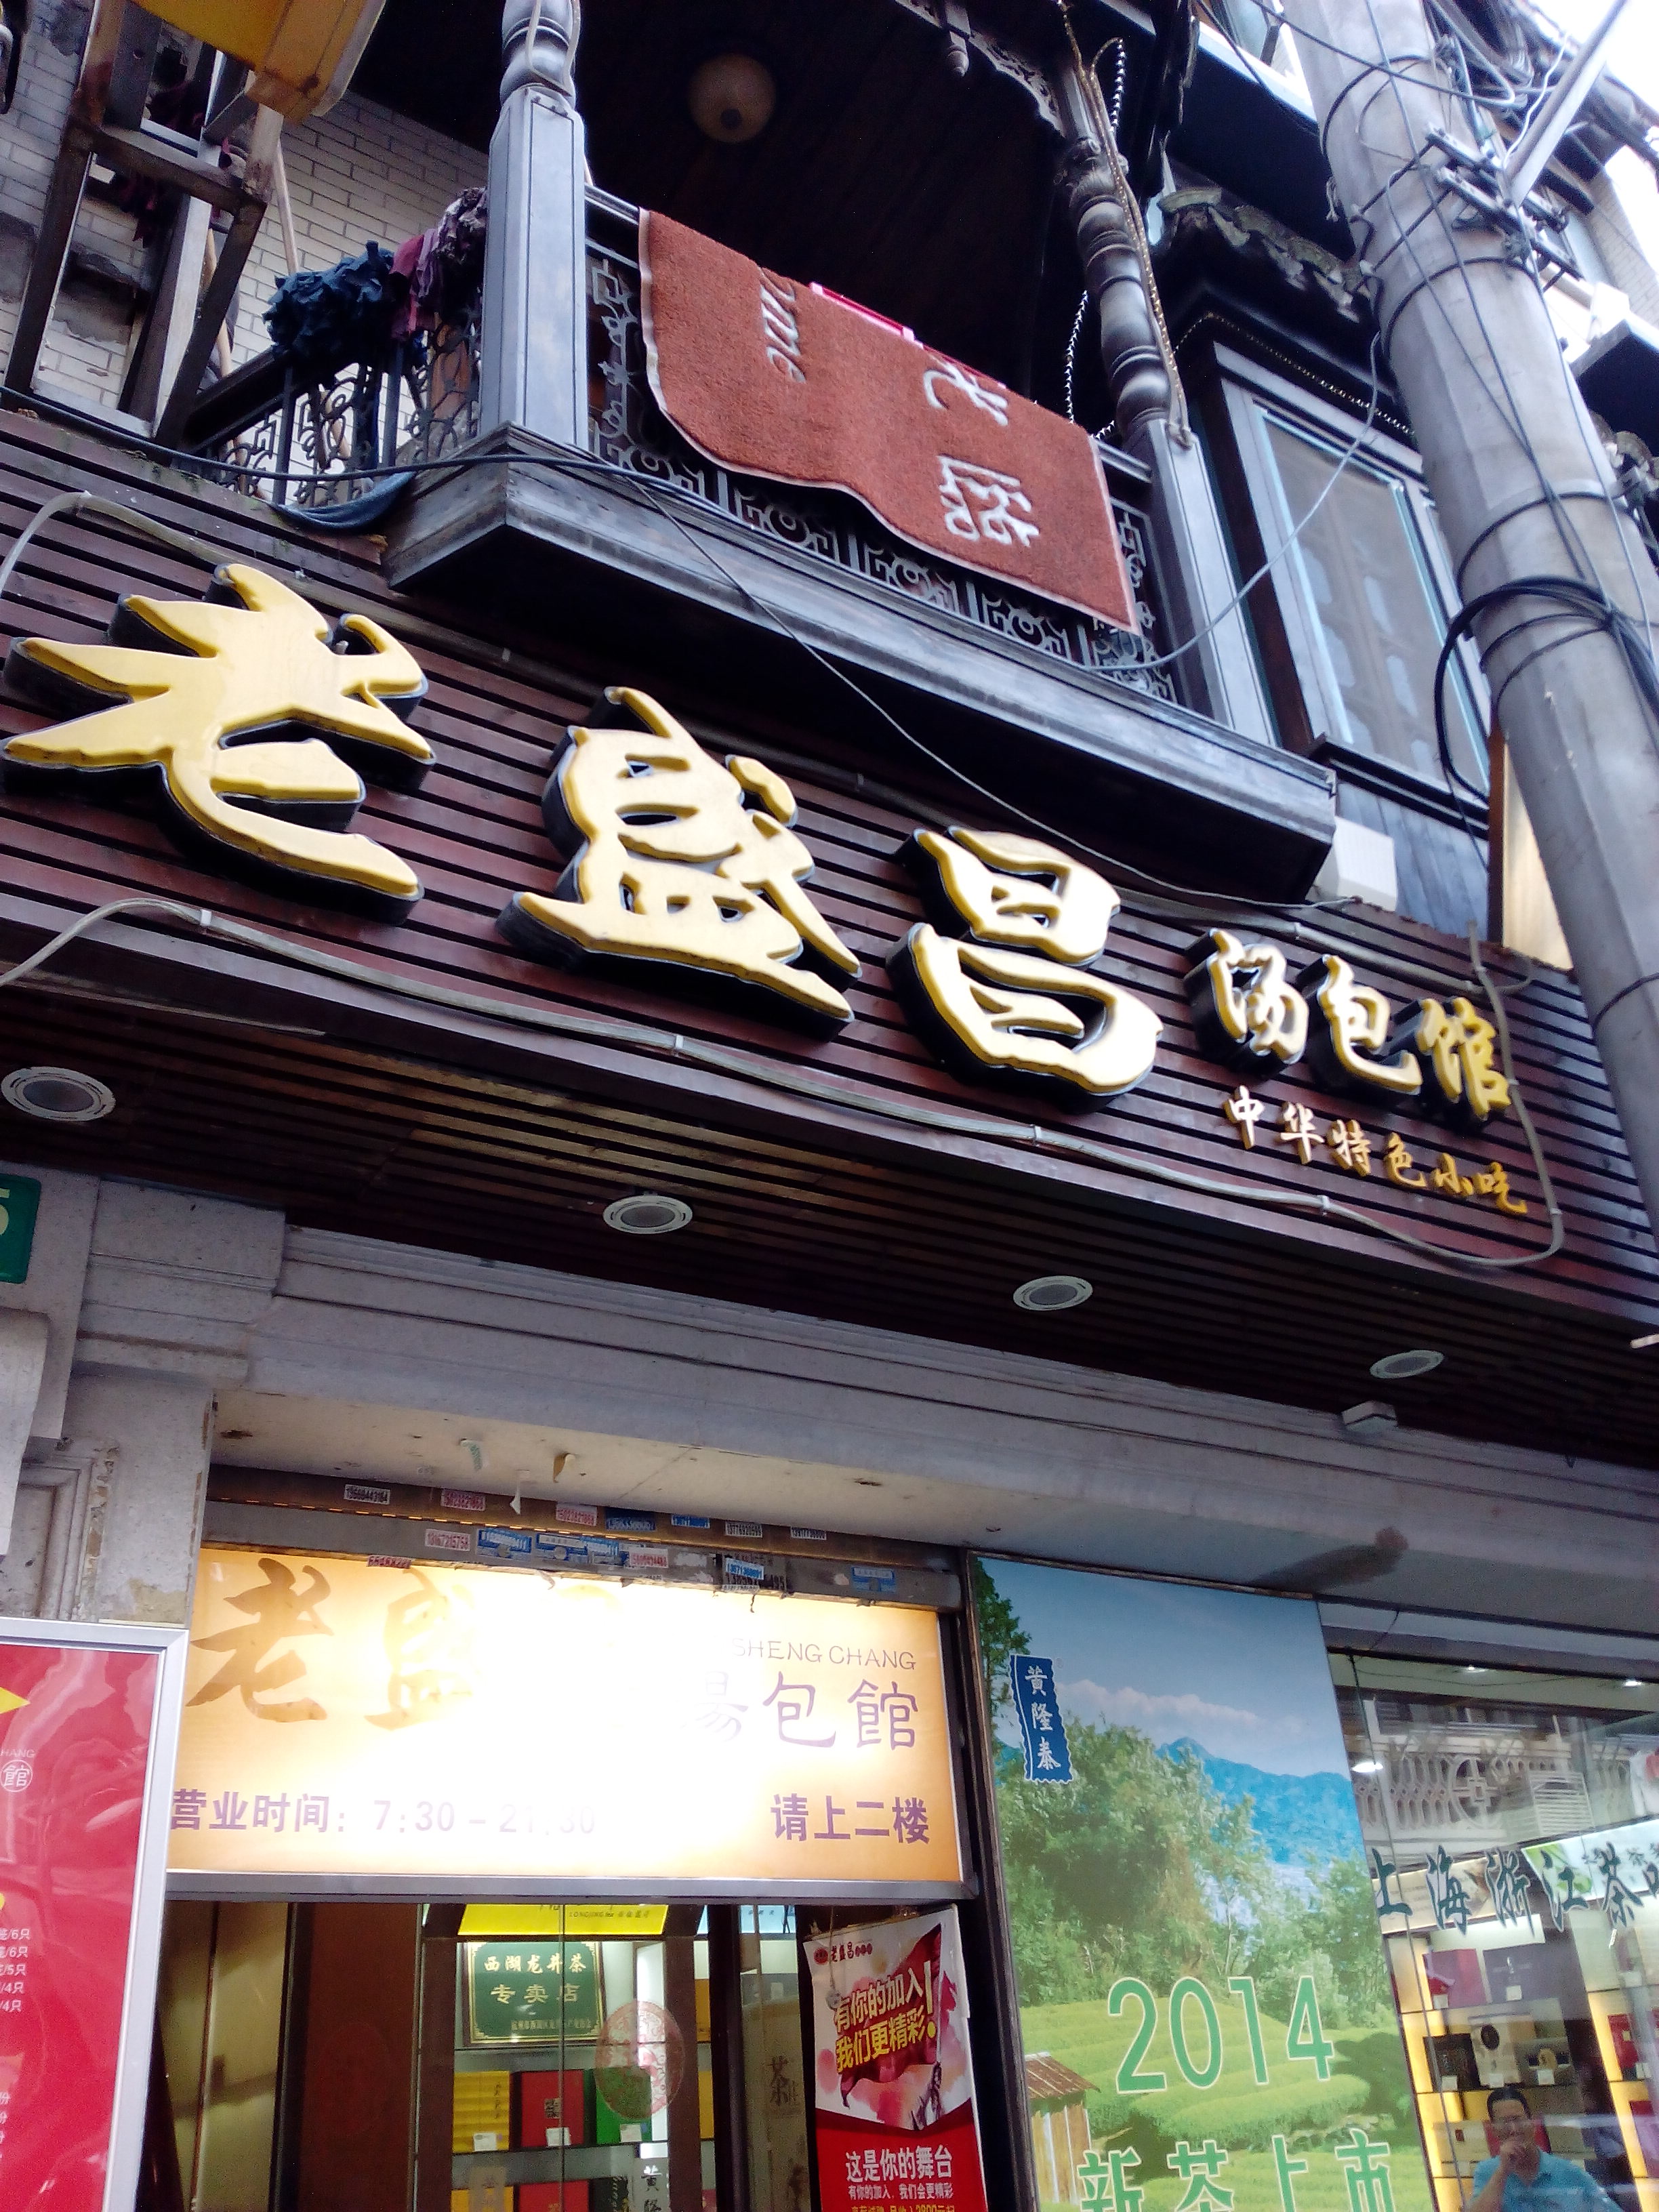 上海老盛昌汤包(南京路店)好吃吗,老盛昌汤包(南京路店)味道怎么样